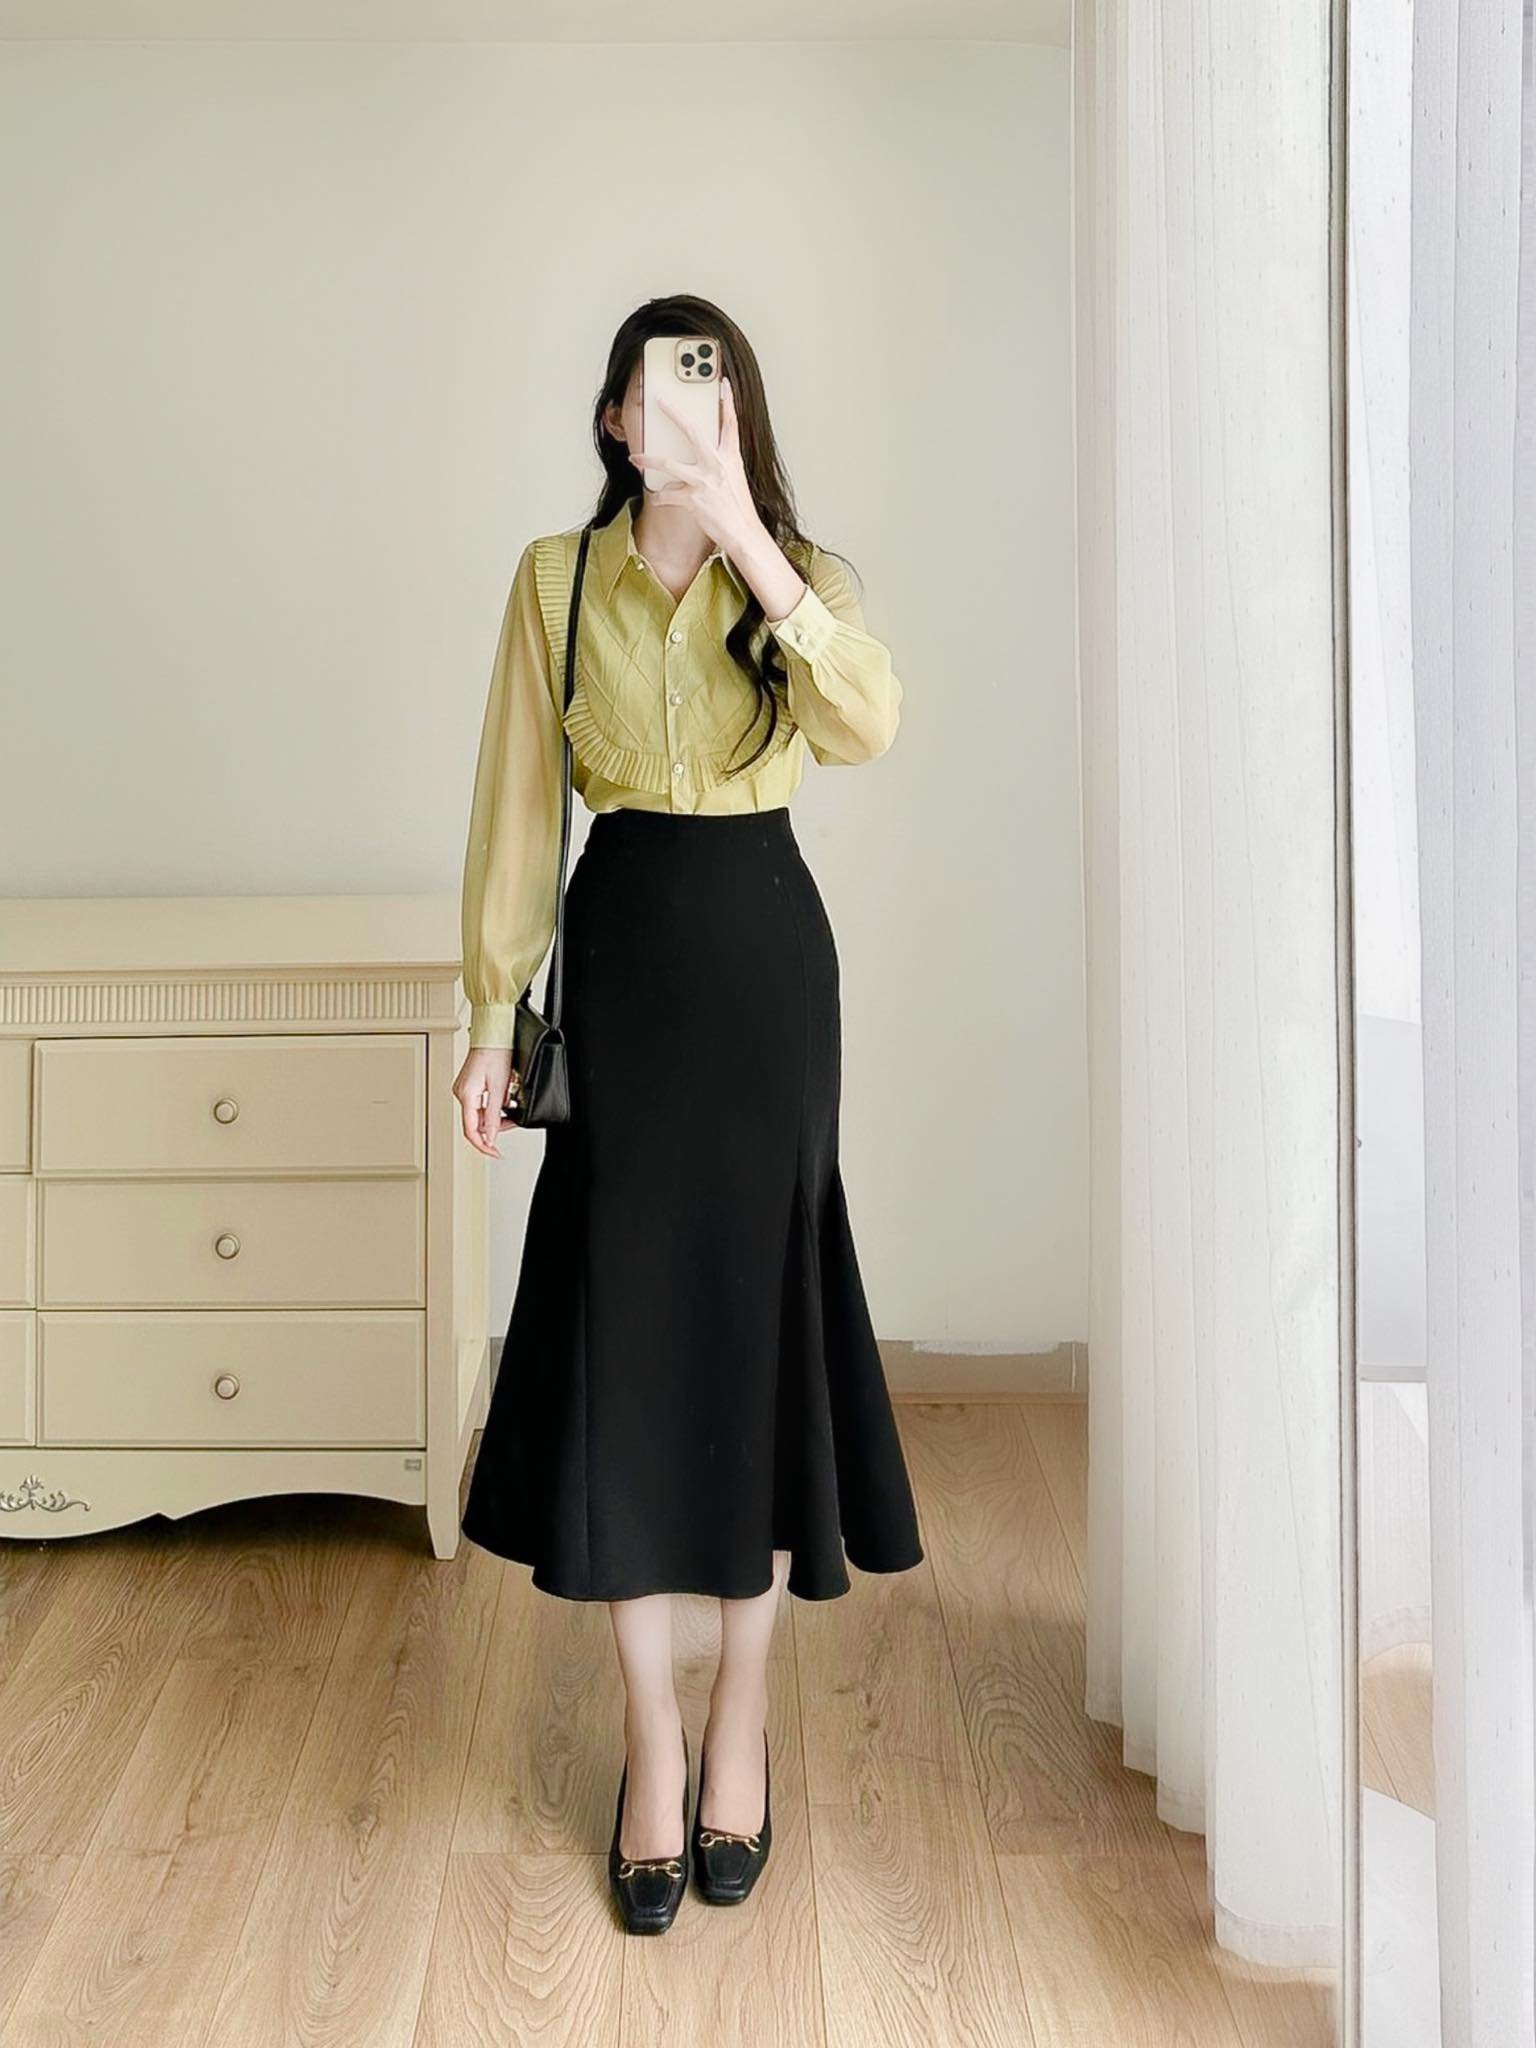 Lưu Ngay 15 Cách Phối Đồ Với Chân Váy Đen Đẹp Và Tinh Tế